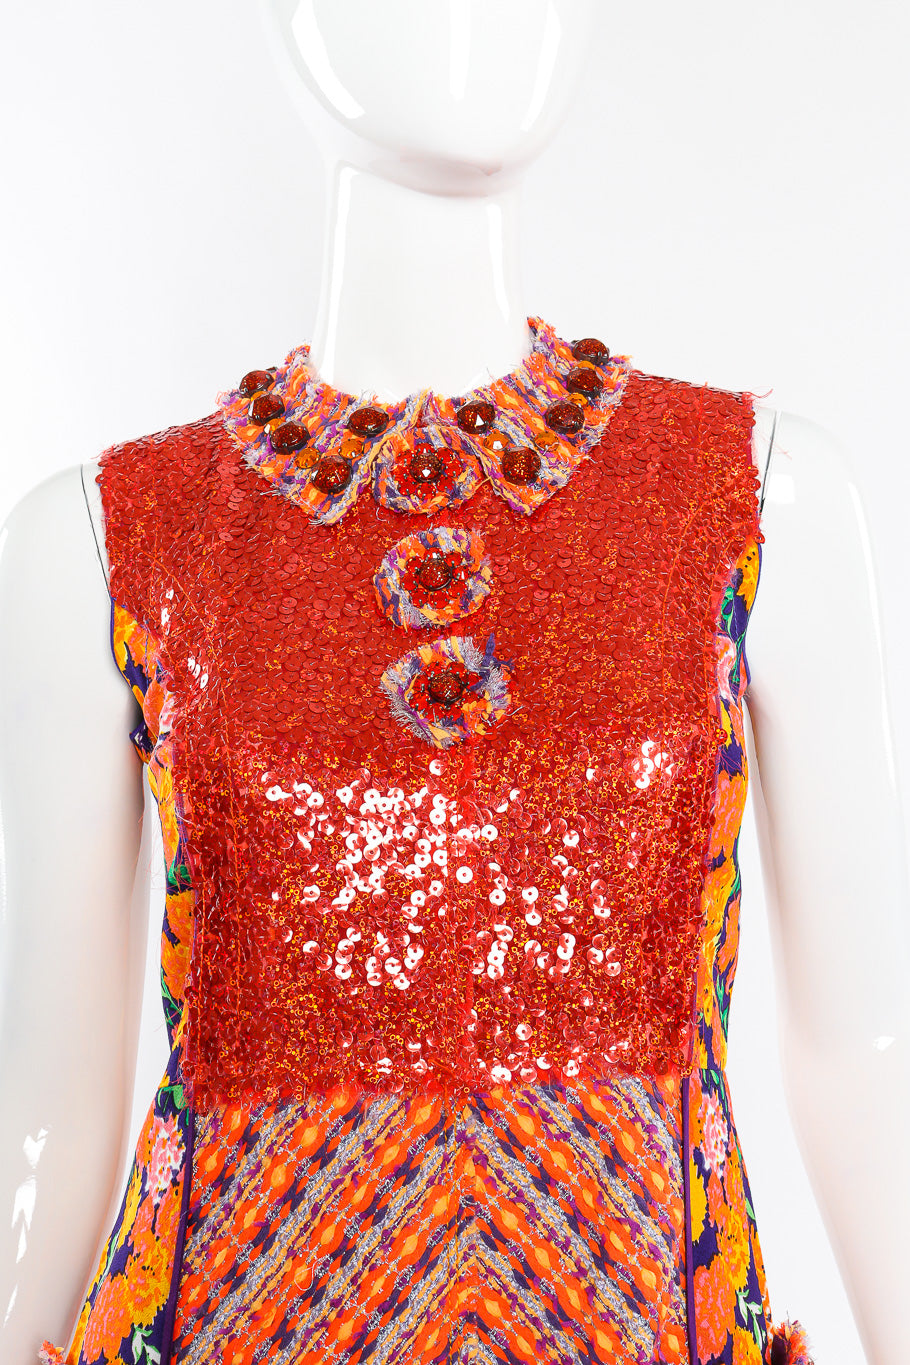 Floral lamé knit sequin dress by Marc Jacobs on mannequin chest close @recessla